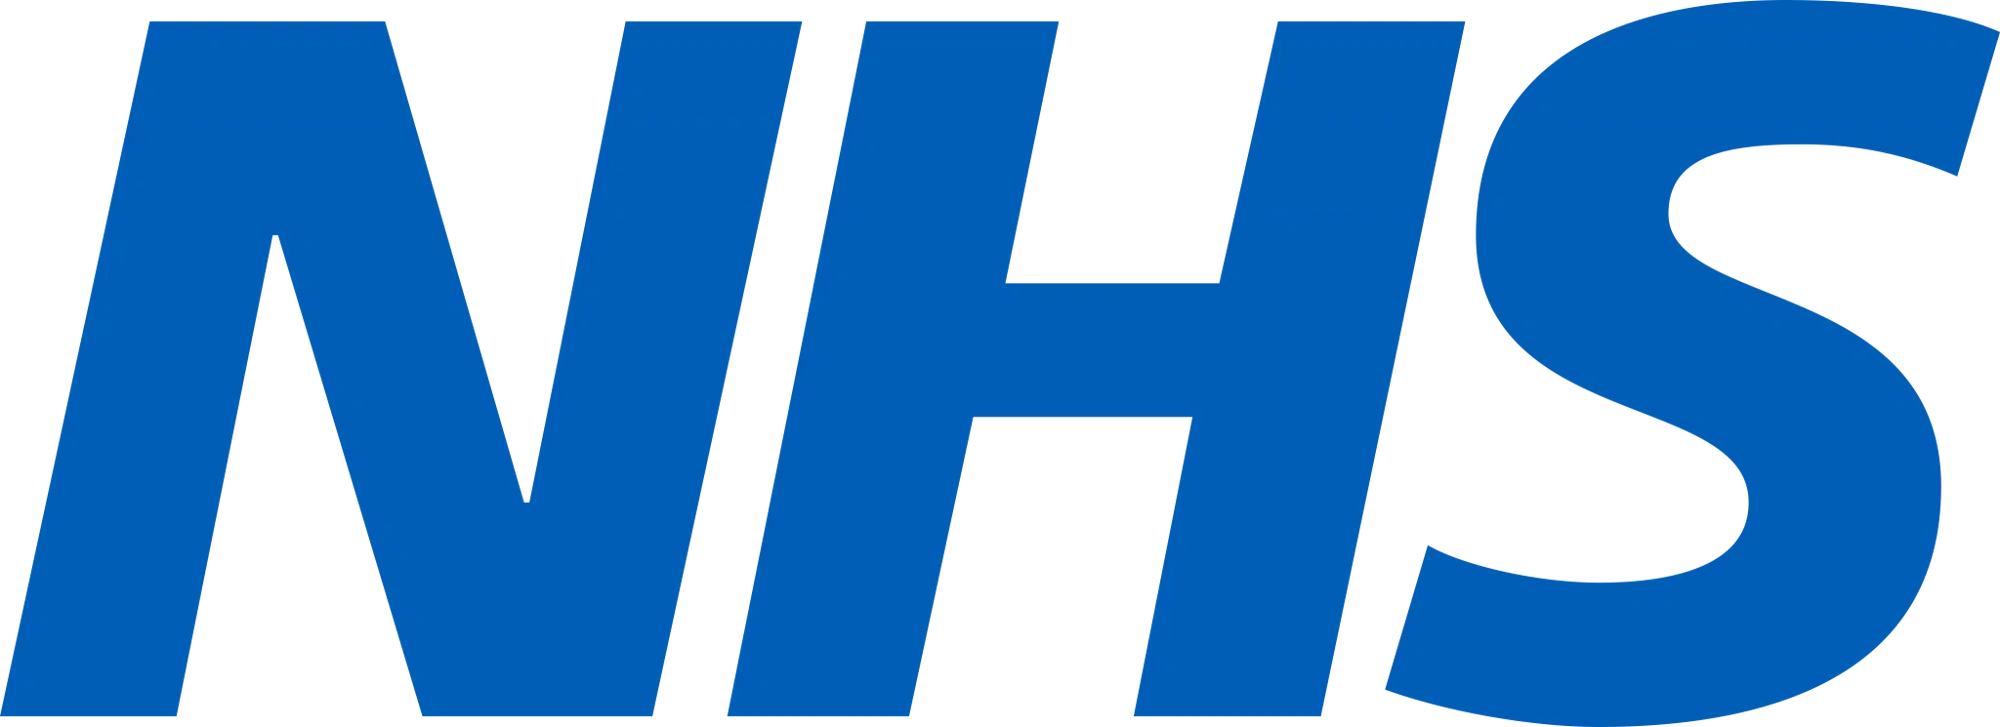 nhs-logo-1-2048x745